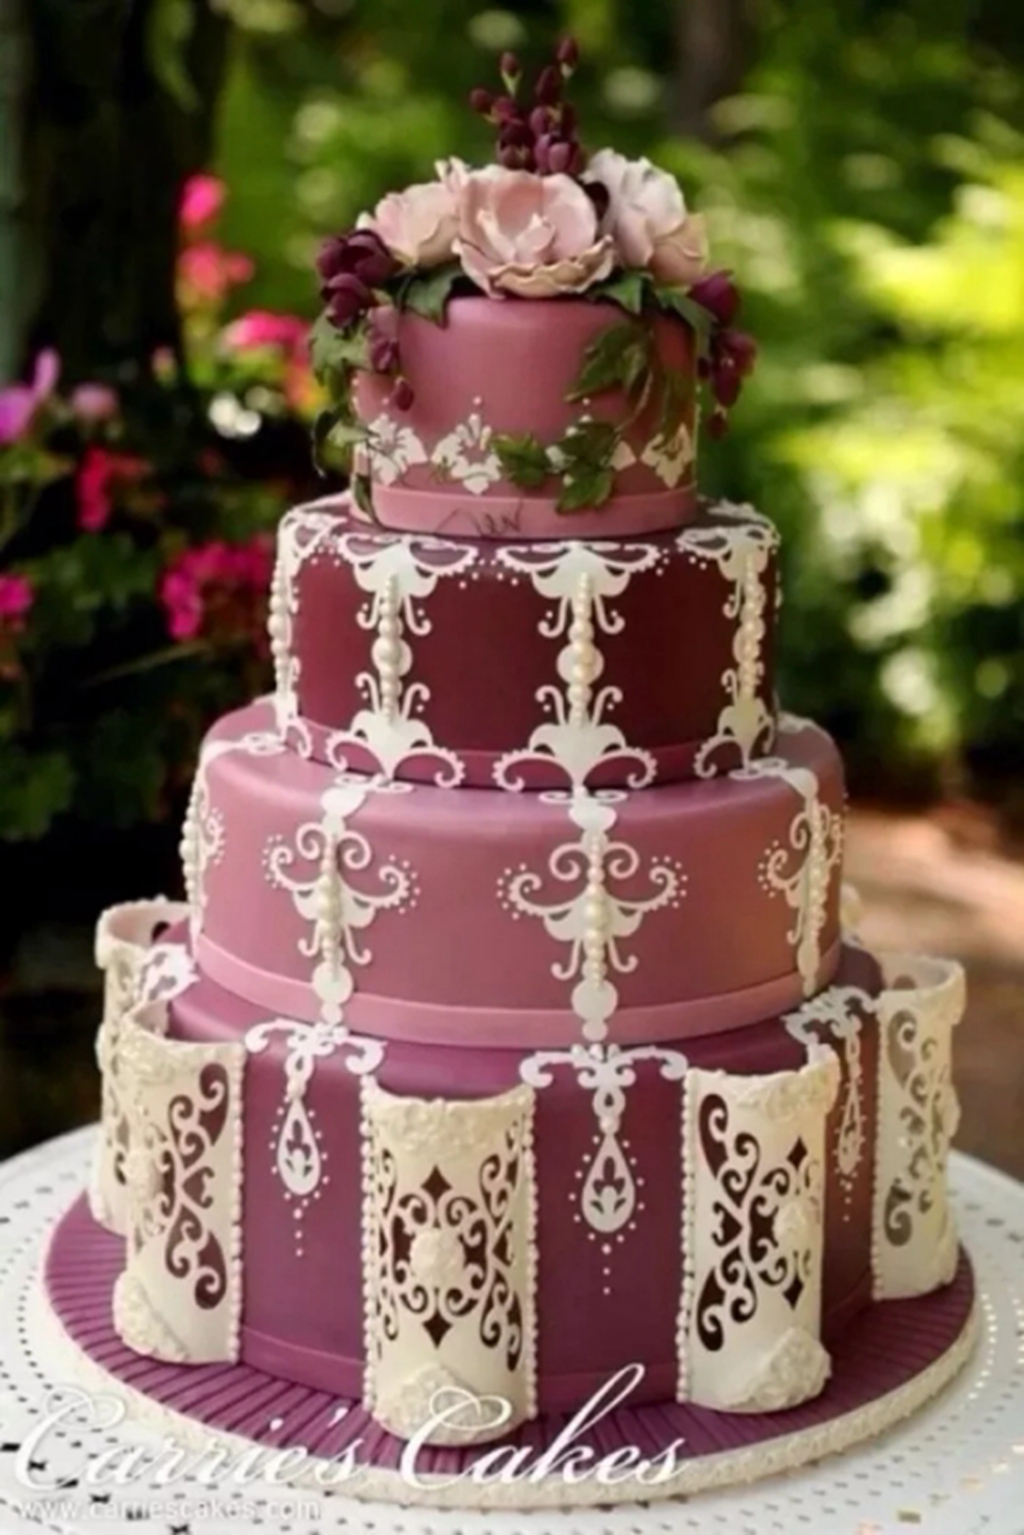 十周年蛋糕图片,结婚纪念日主题蛋糕 - 伤感说说吧